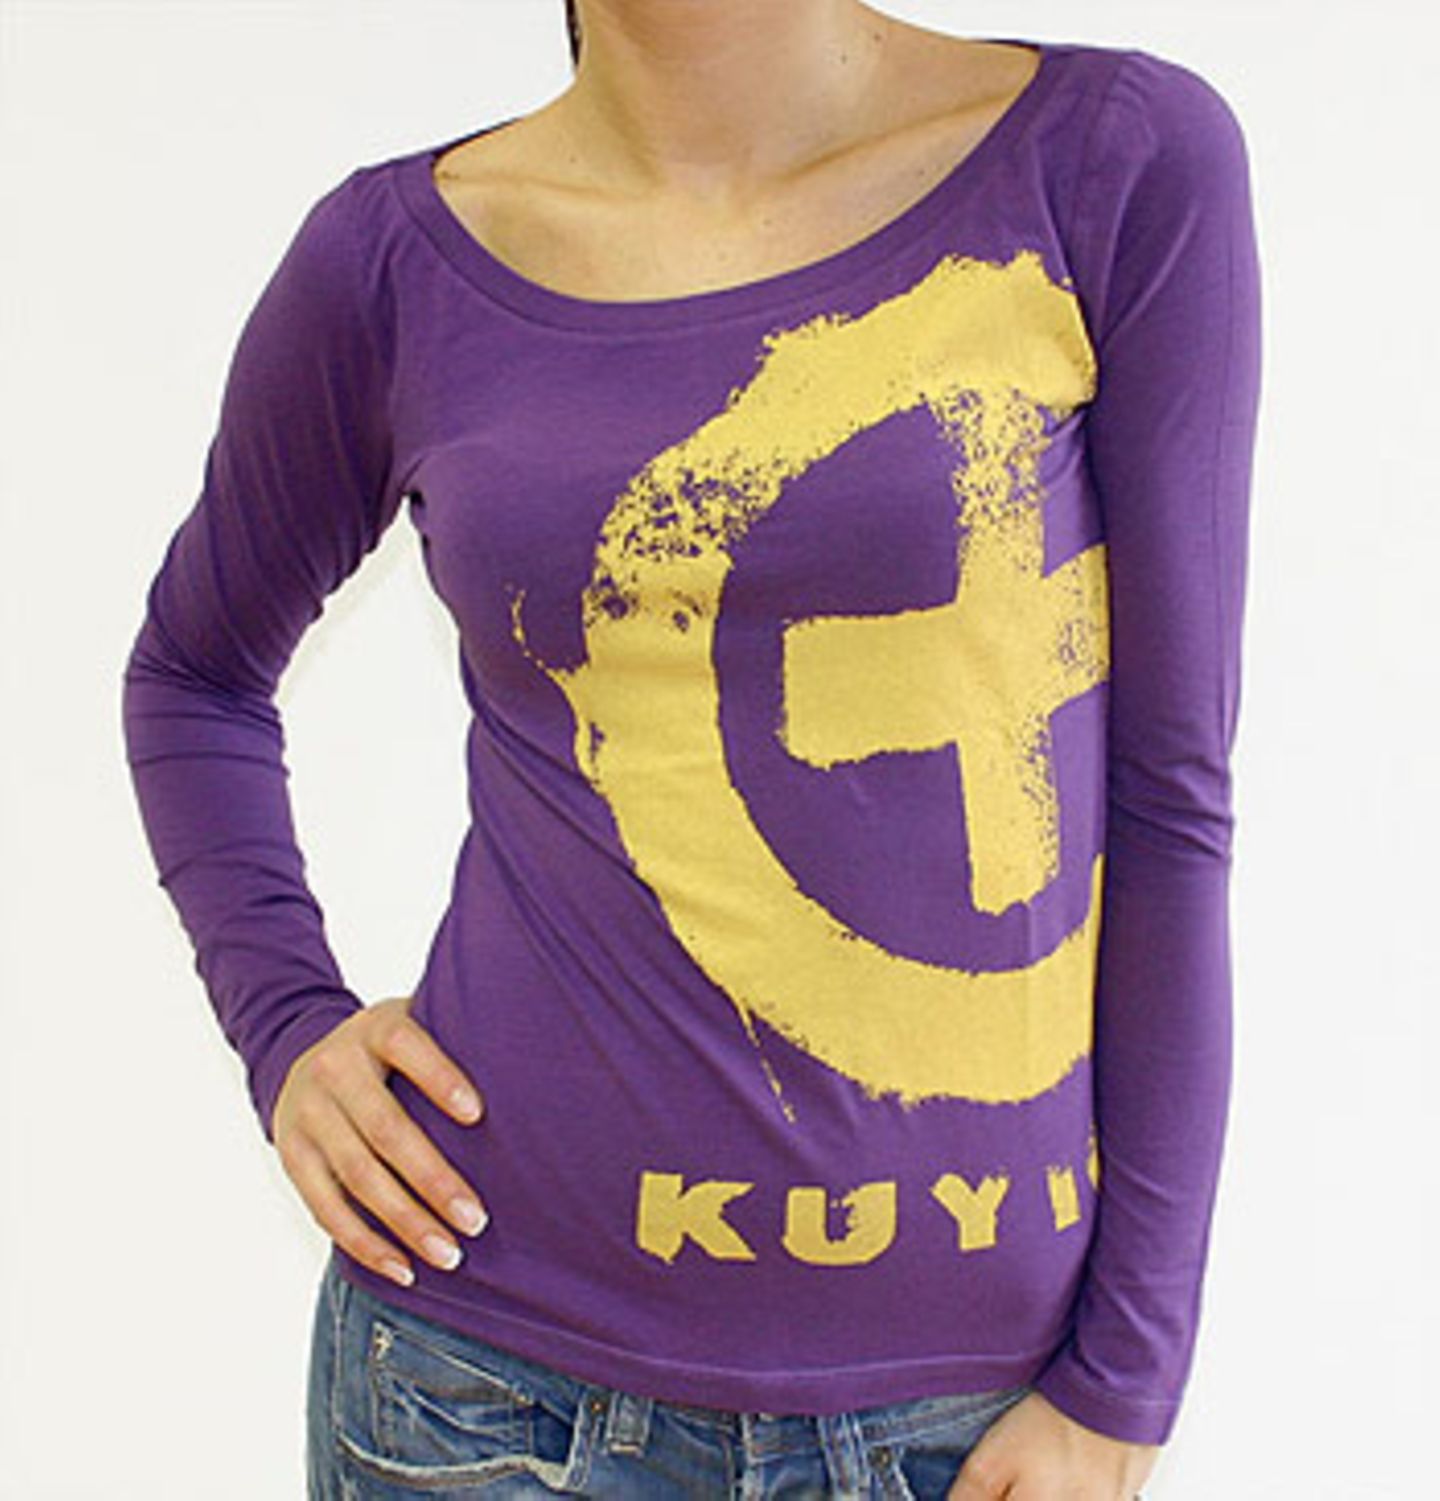 T-Shirt "Dew purple rain" von Kuyichi mit Riesenlogo; zu 90 Prozent hergestellt aus ökologisch angebauter Baumwolle und 10 Prozent Lycra single jersey; 39,90 Euro inkl. MwSt. zzgl. Versandkosten; von Kuyichi  über >> www.true-fashion.com